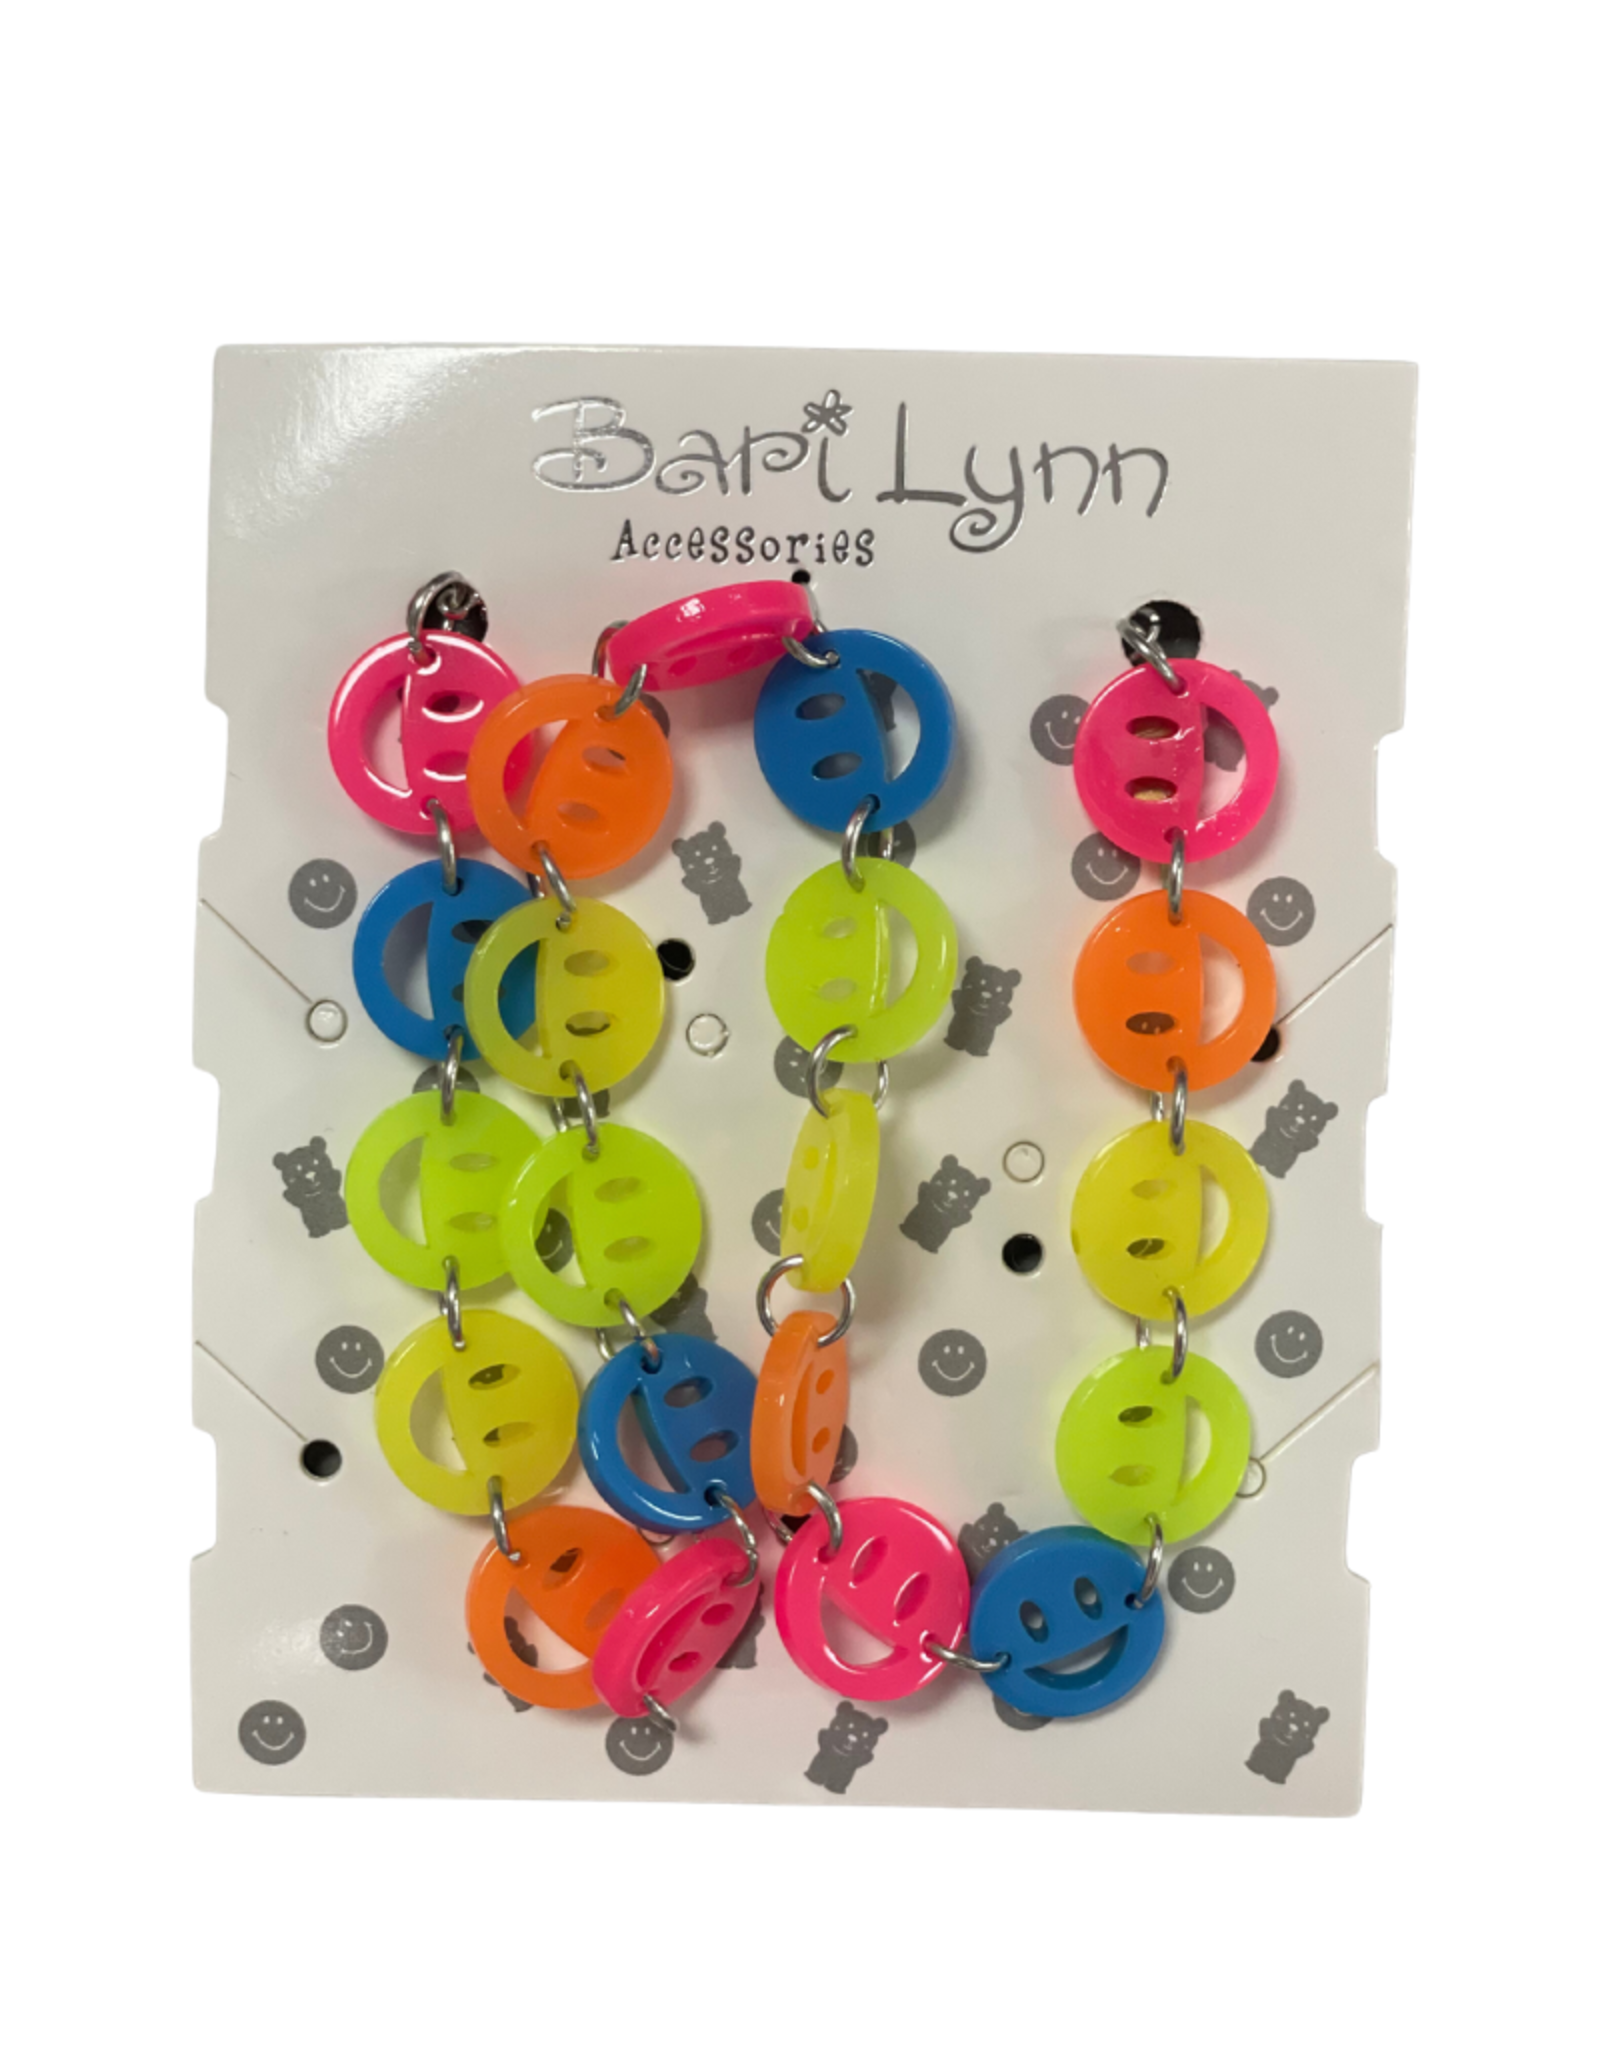 Bari Lynn Neon Acrylic Smile Necklace